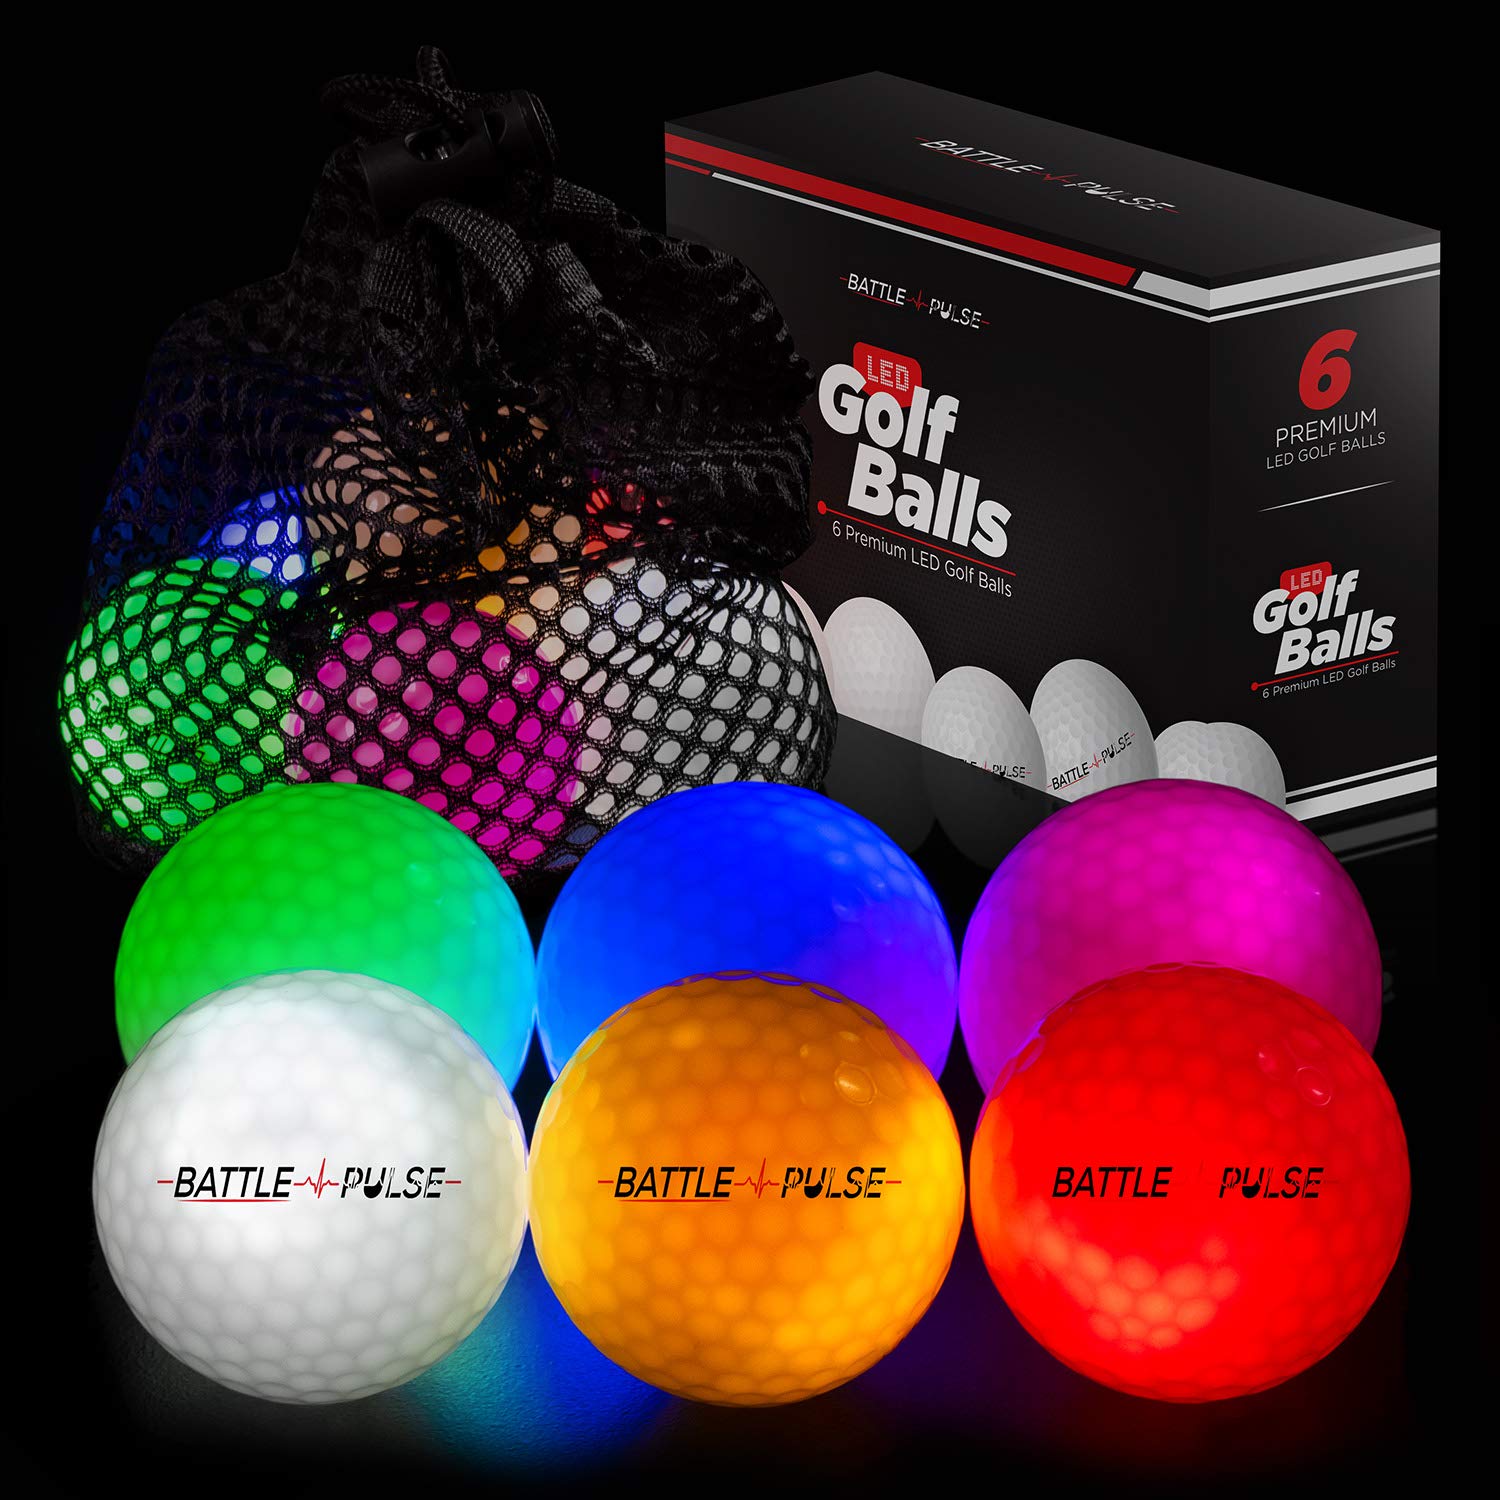 BattlePulse Glow Golf Balls